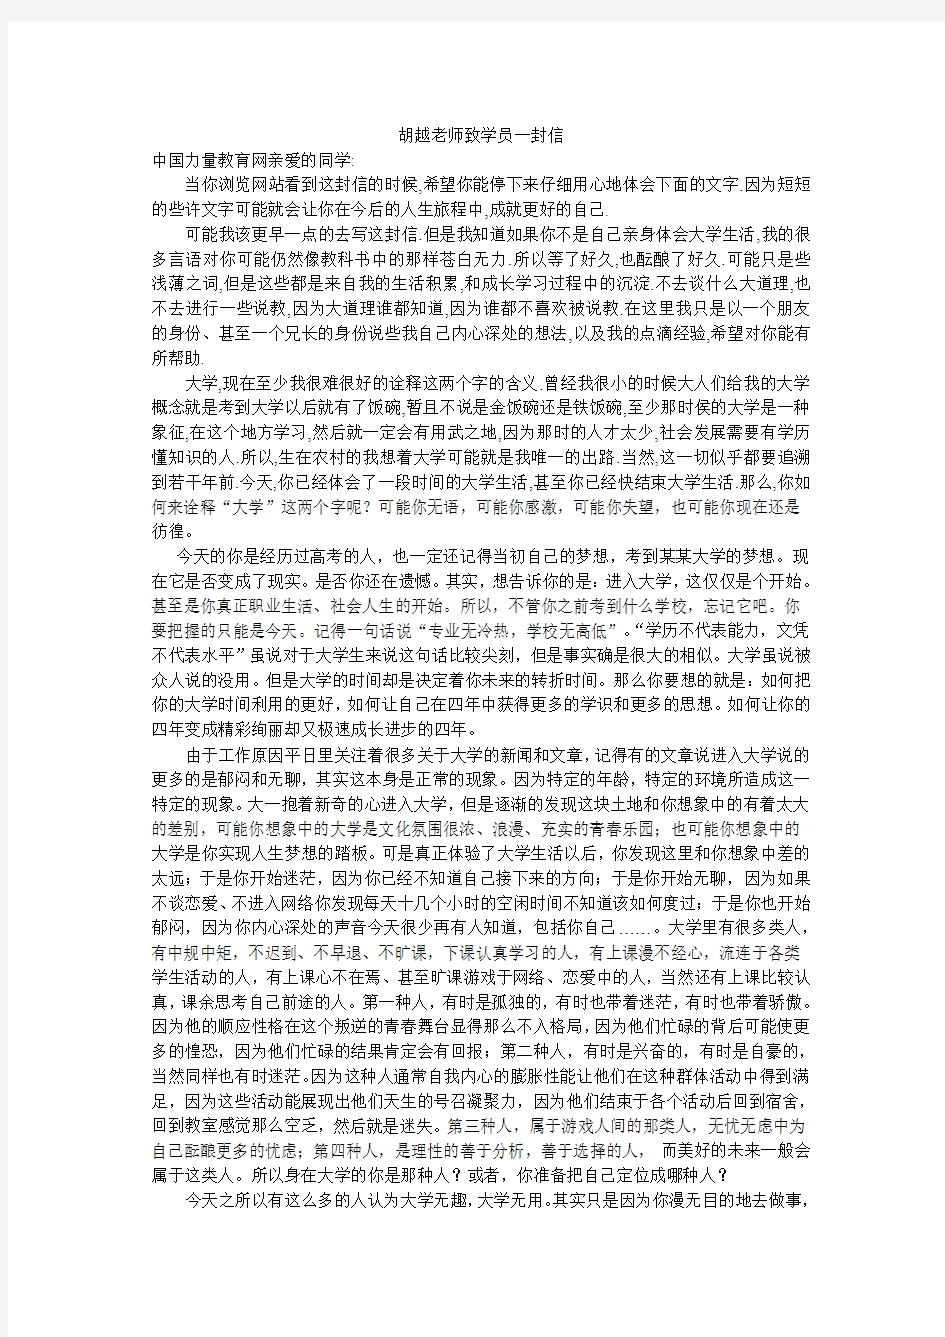 中国力量教育网至学员一封信